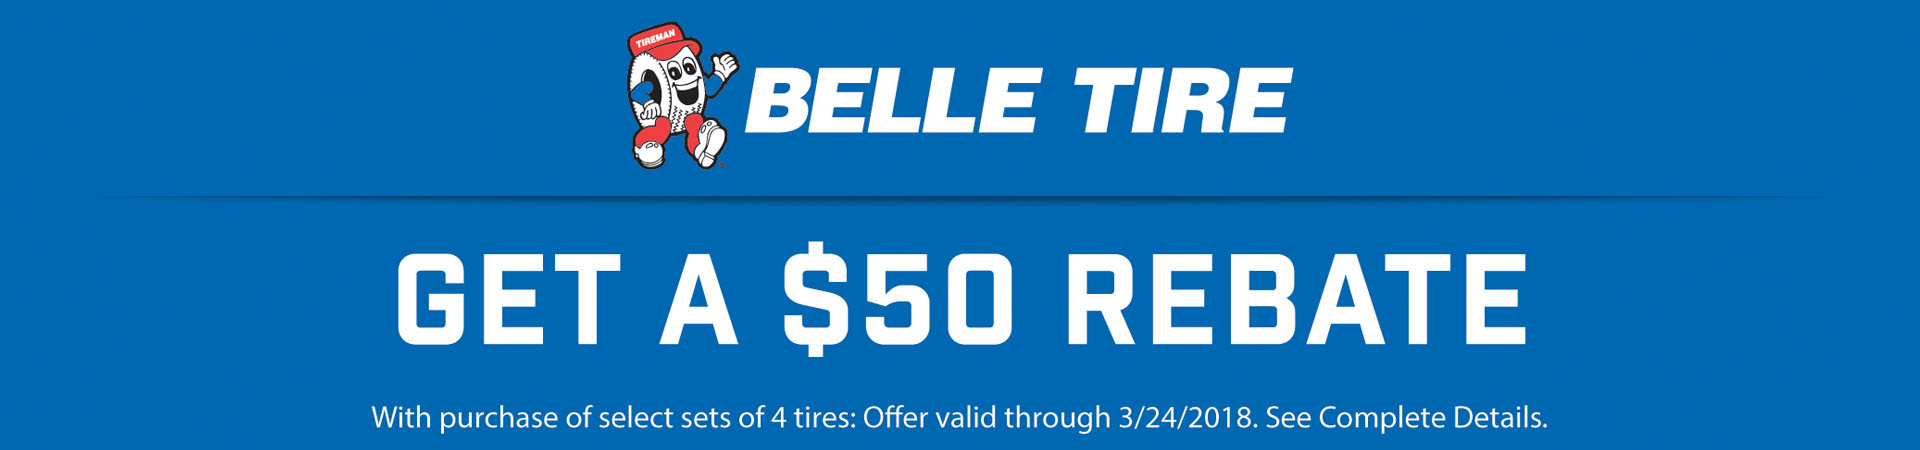 Belle Tire Pothole Relief Sale 50 Rebate Belle Tire